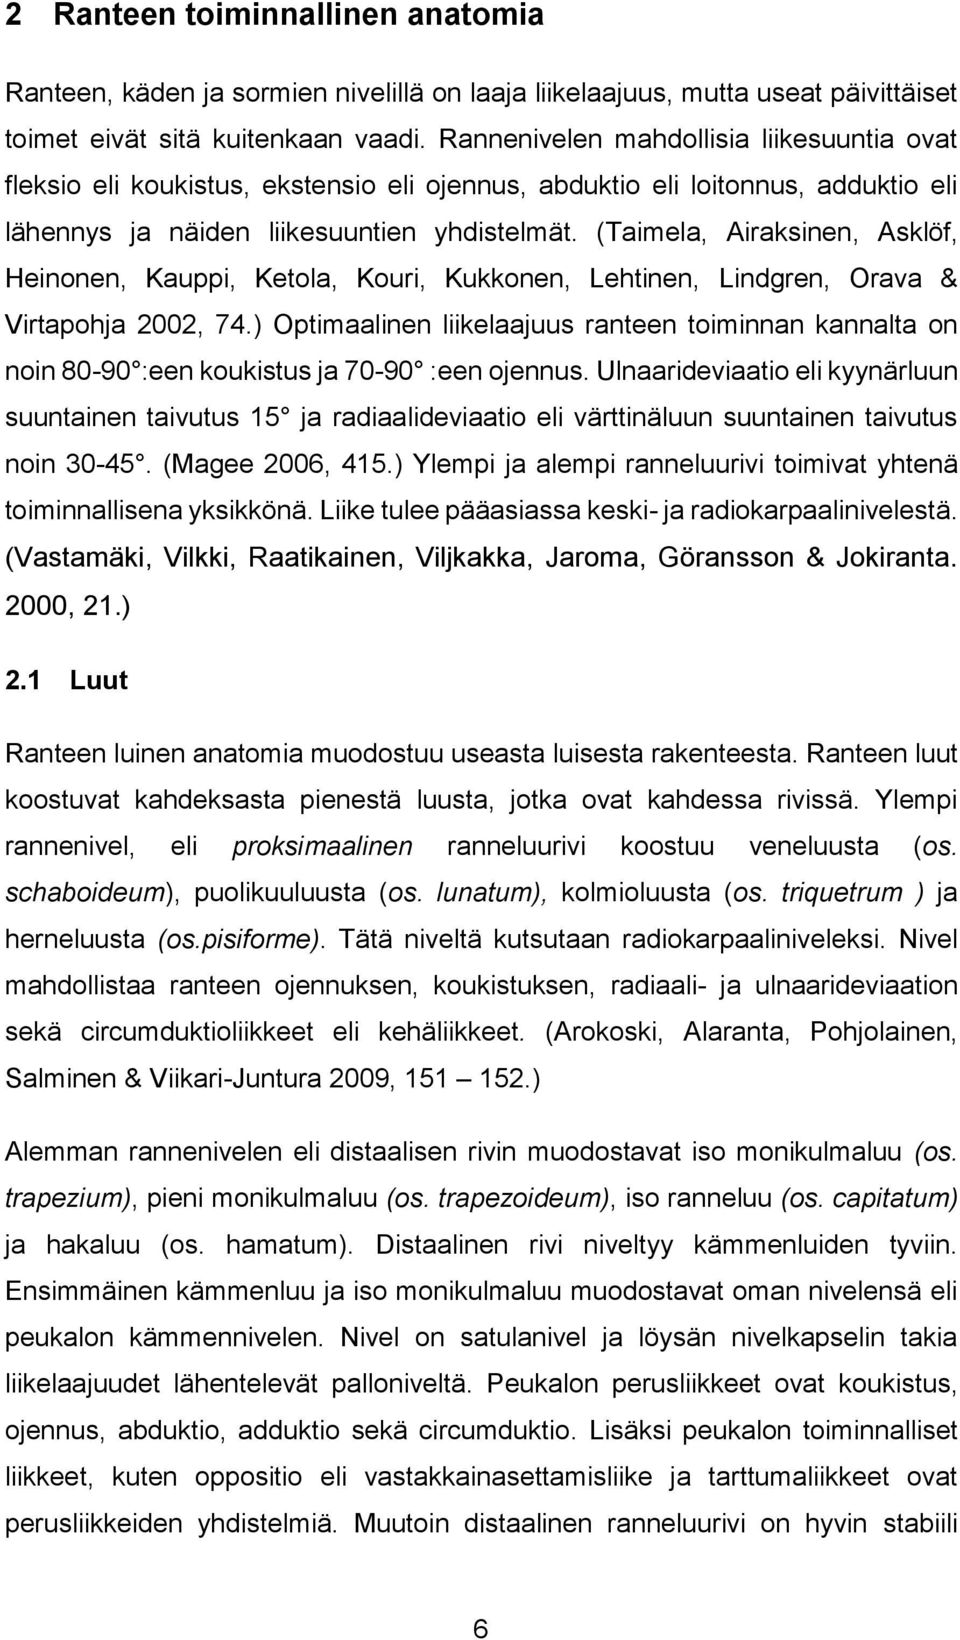 (Taimela, Airaksinen, Asklöf, Heinonen, Kauppi, Ketola, Kouri, Kukkonen, Lehtinen, Lindgren, Orava & Virtapohja 2002, 74.